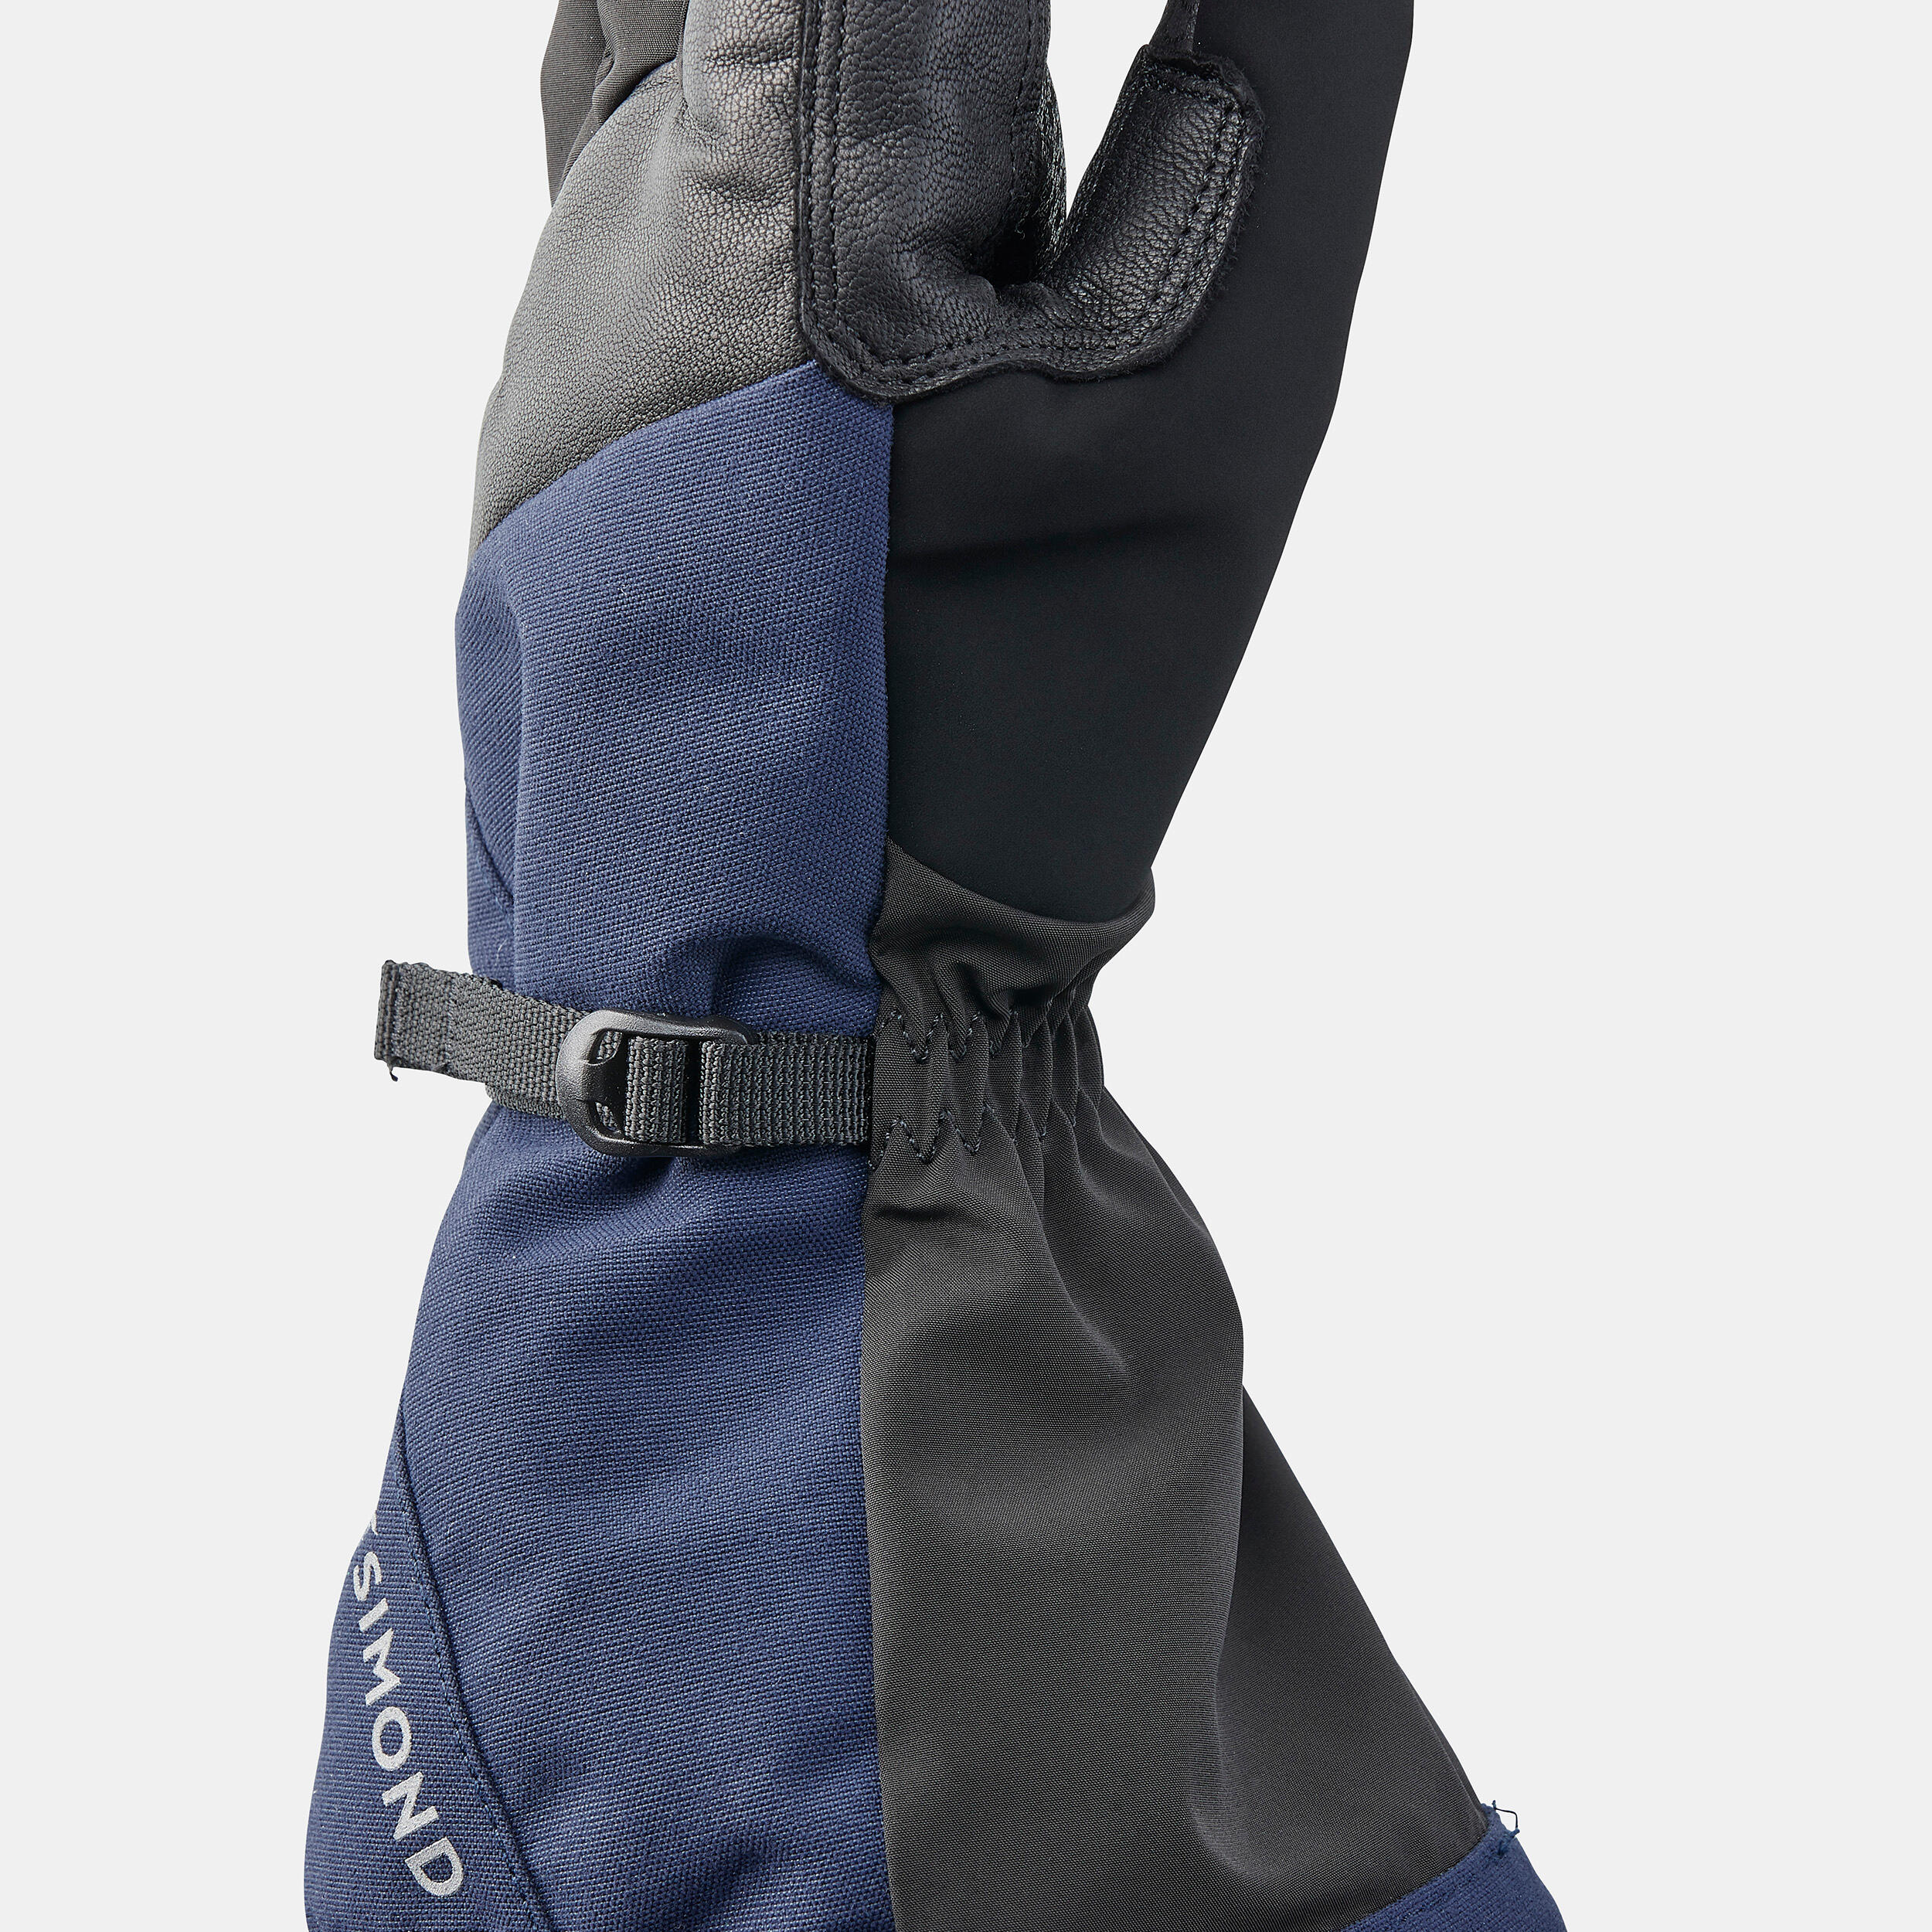 2-in-1 waterproof mountaineering gloves, black 7/9